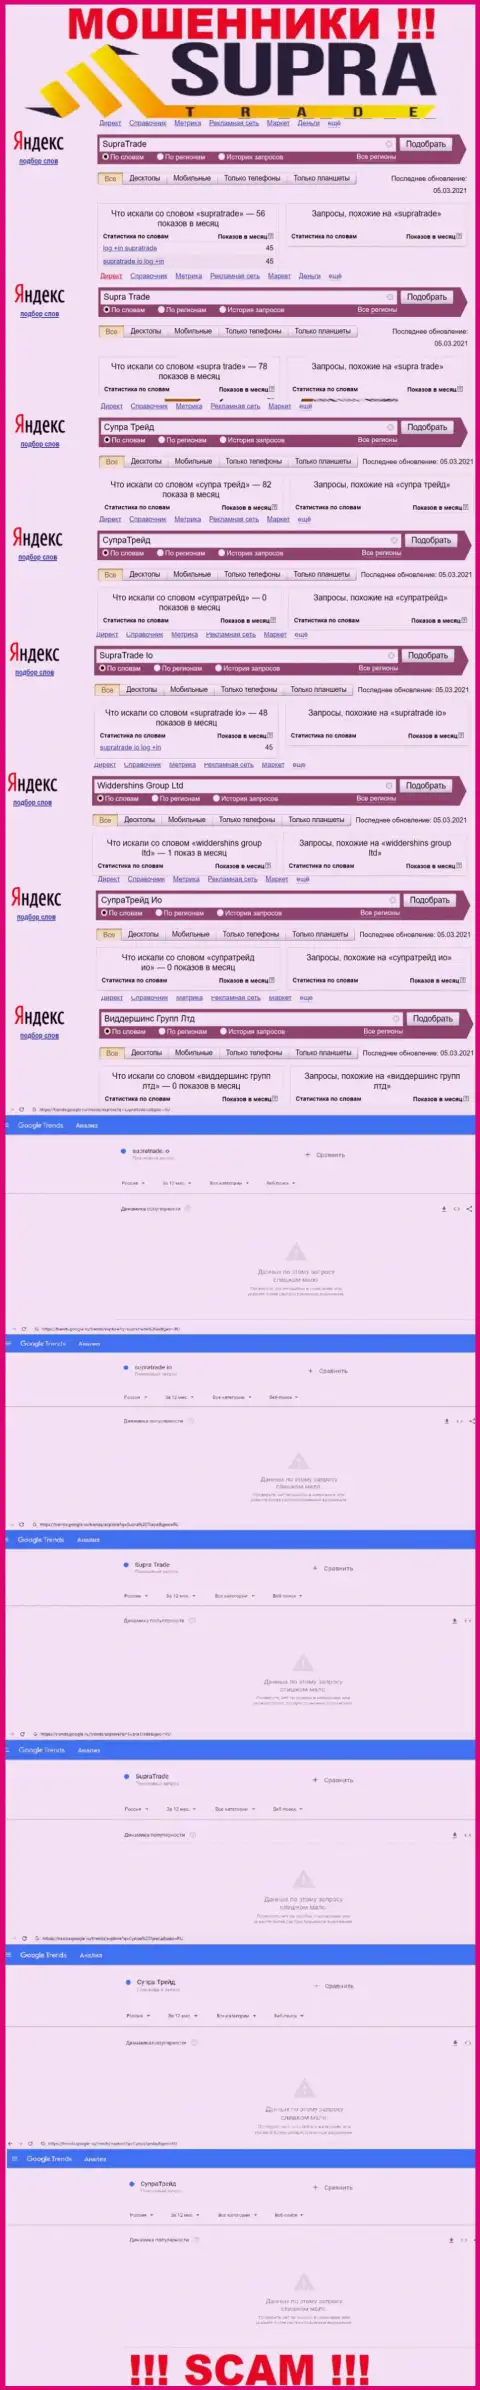 Онлайн-запросы по бренду мошенников Supra Trade в поисковиках глобальной сети internet